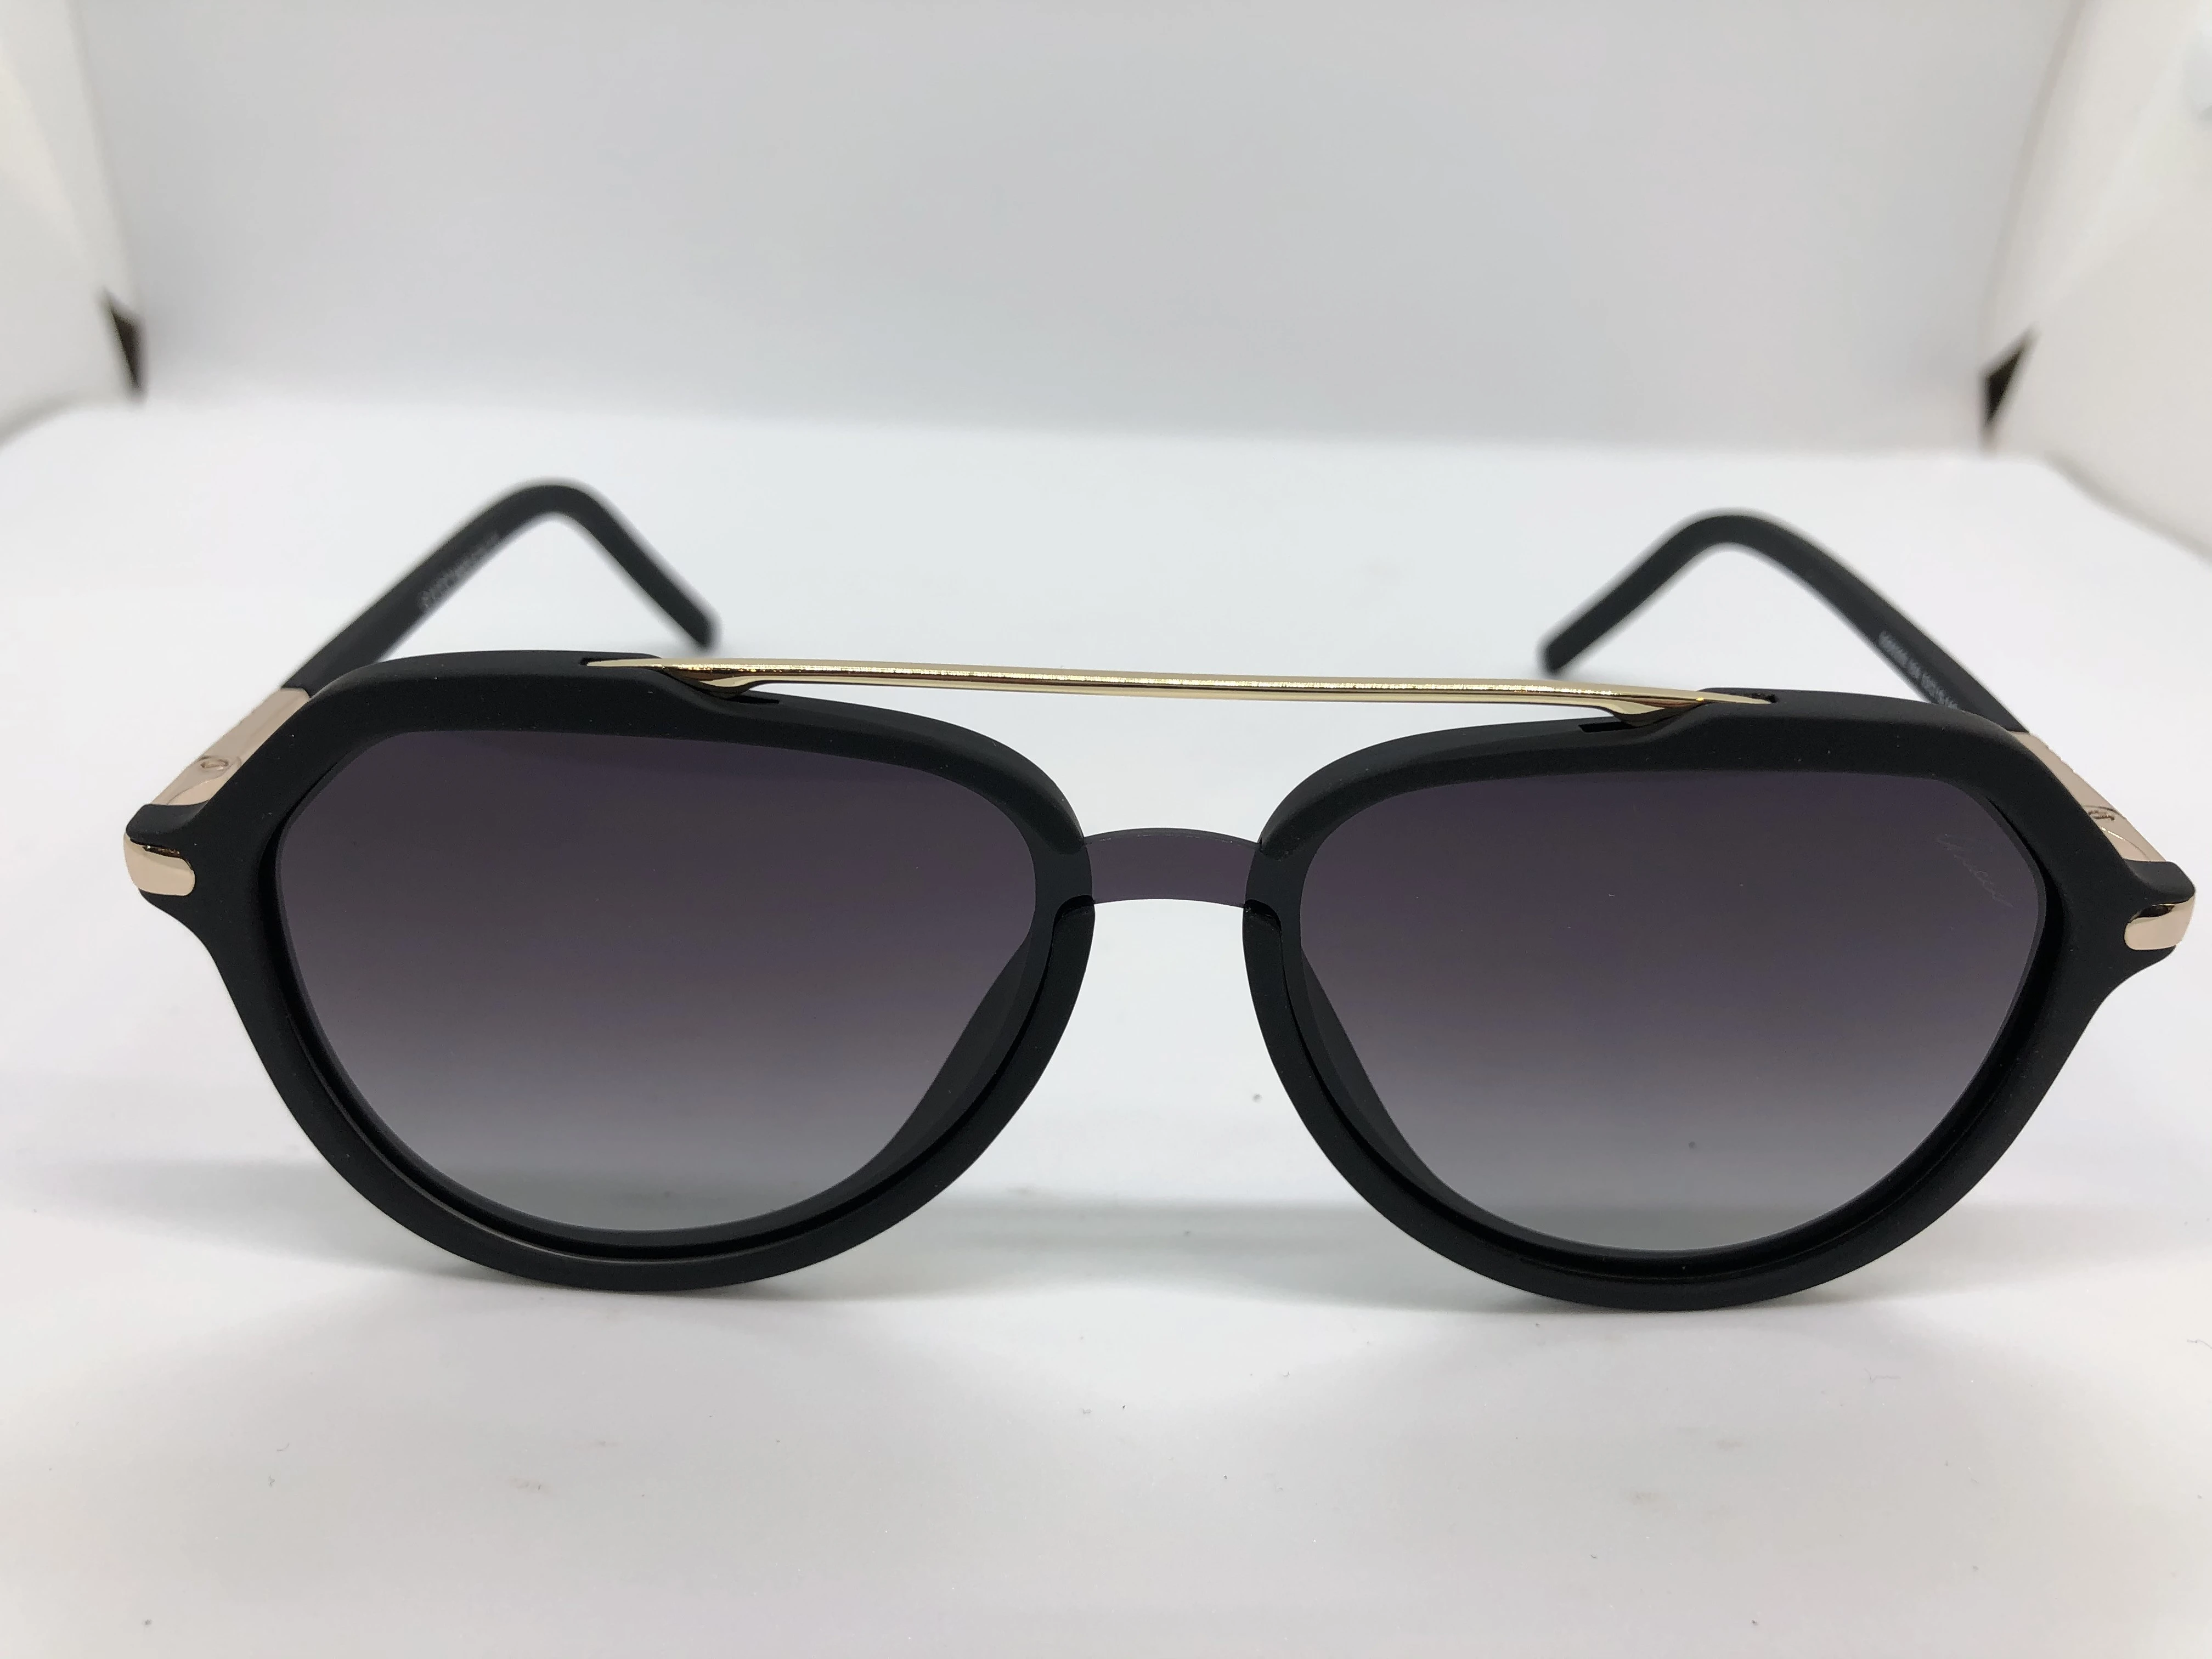 نظارة شمسية - من أوجا - باطار اسود بولي كاربونات - وعدسات سوداء متدرجة - وزراع اسود بولي كاربونات - رجالي